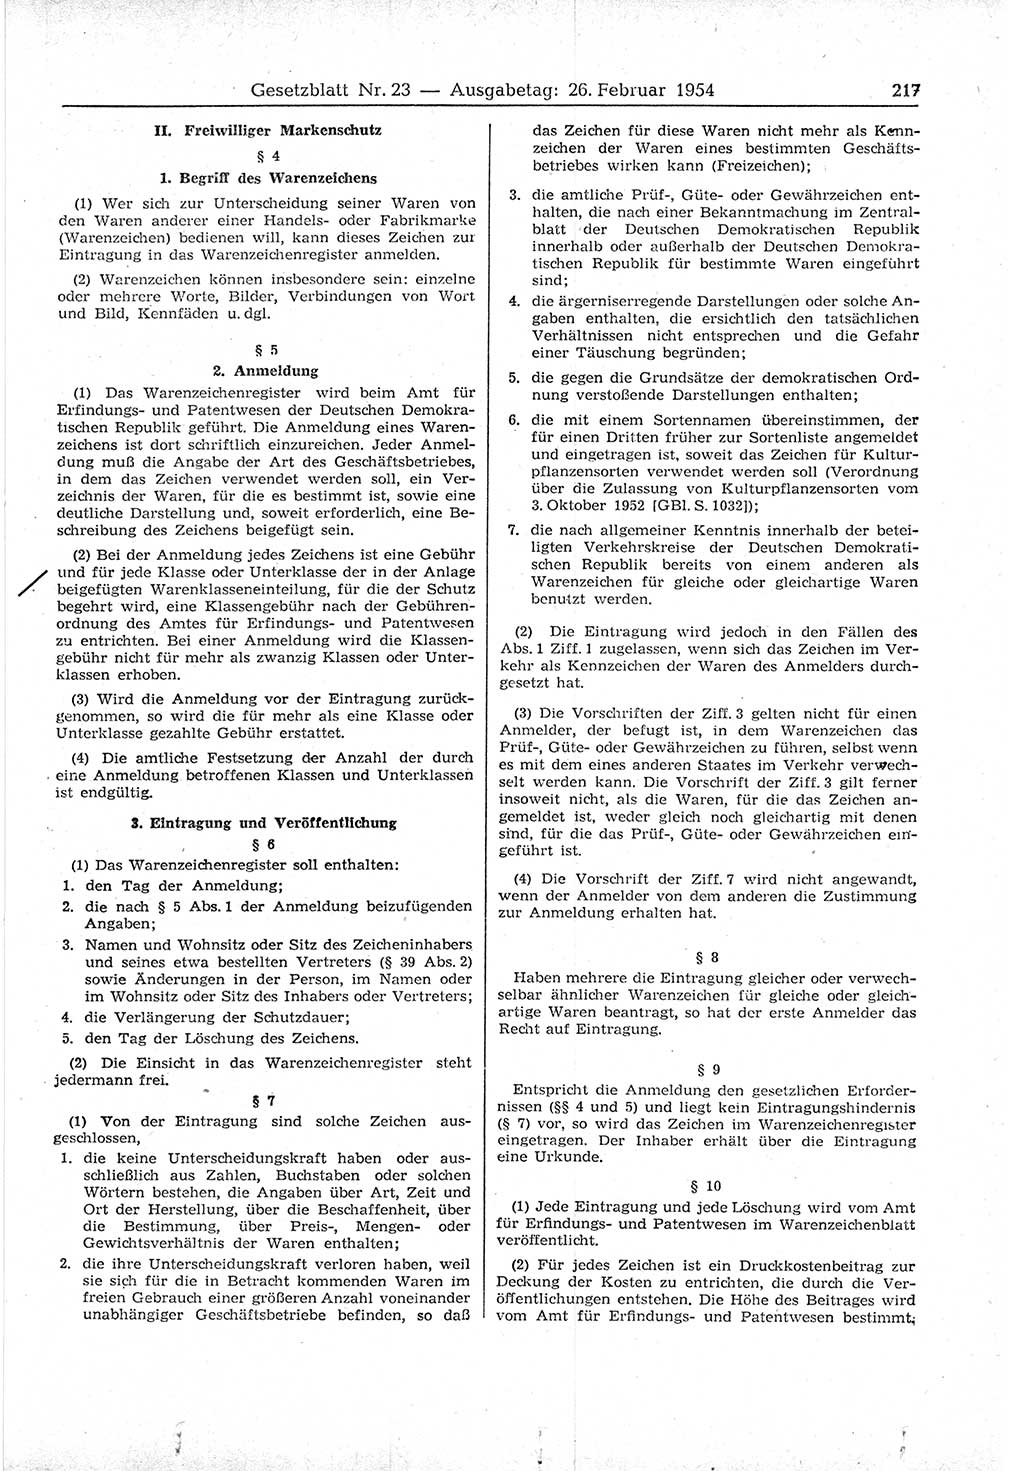 Gesetzblatt (GBl.) der Deutschen Demokratischen Republik (DDR) 1954, Seite 217 (GBl. DDR 1954, S. 217)